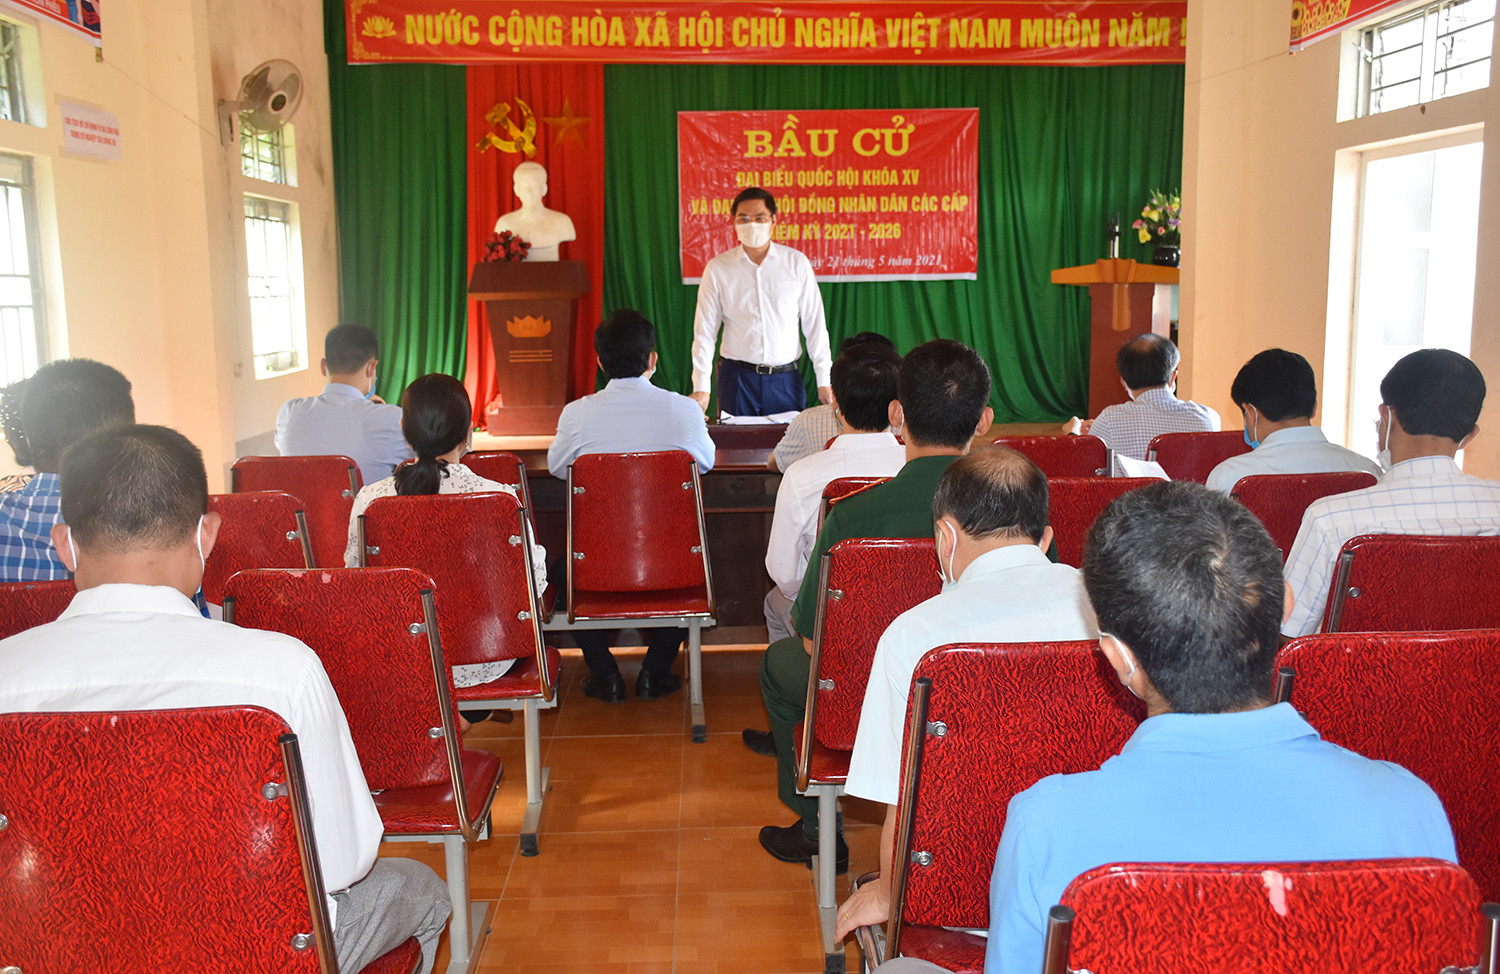 Đoàn làm việc với lãnh đạo huyện Quế Phong và xã Mường Nọc. Ảnh: Thanh Lê